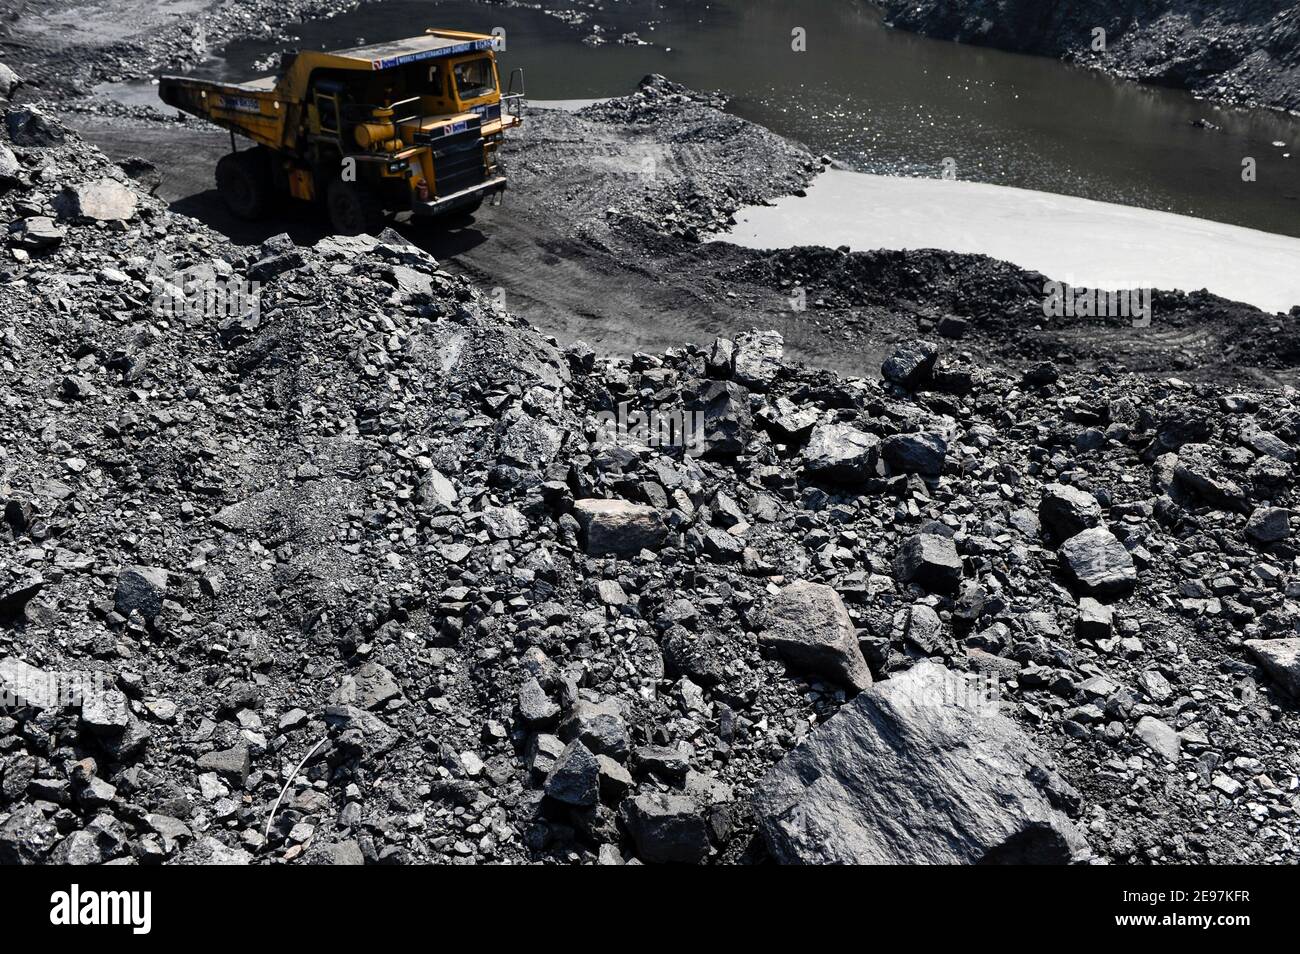 INDE Dhanbad, mine de charbon à ciel ouvert de BCCL Ltd une entreprise de CHARBON INDE, grand tombereau de BEML / INDIEN Dhanbad , offenser Kohle Tagebau von BCCL Ltd. Ein Tochterunternehmen von Coal India Banque D'Images